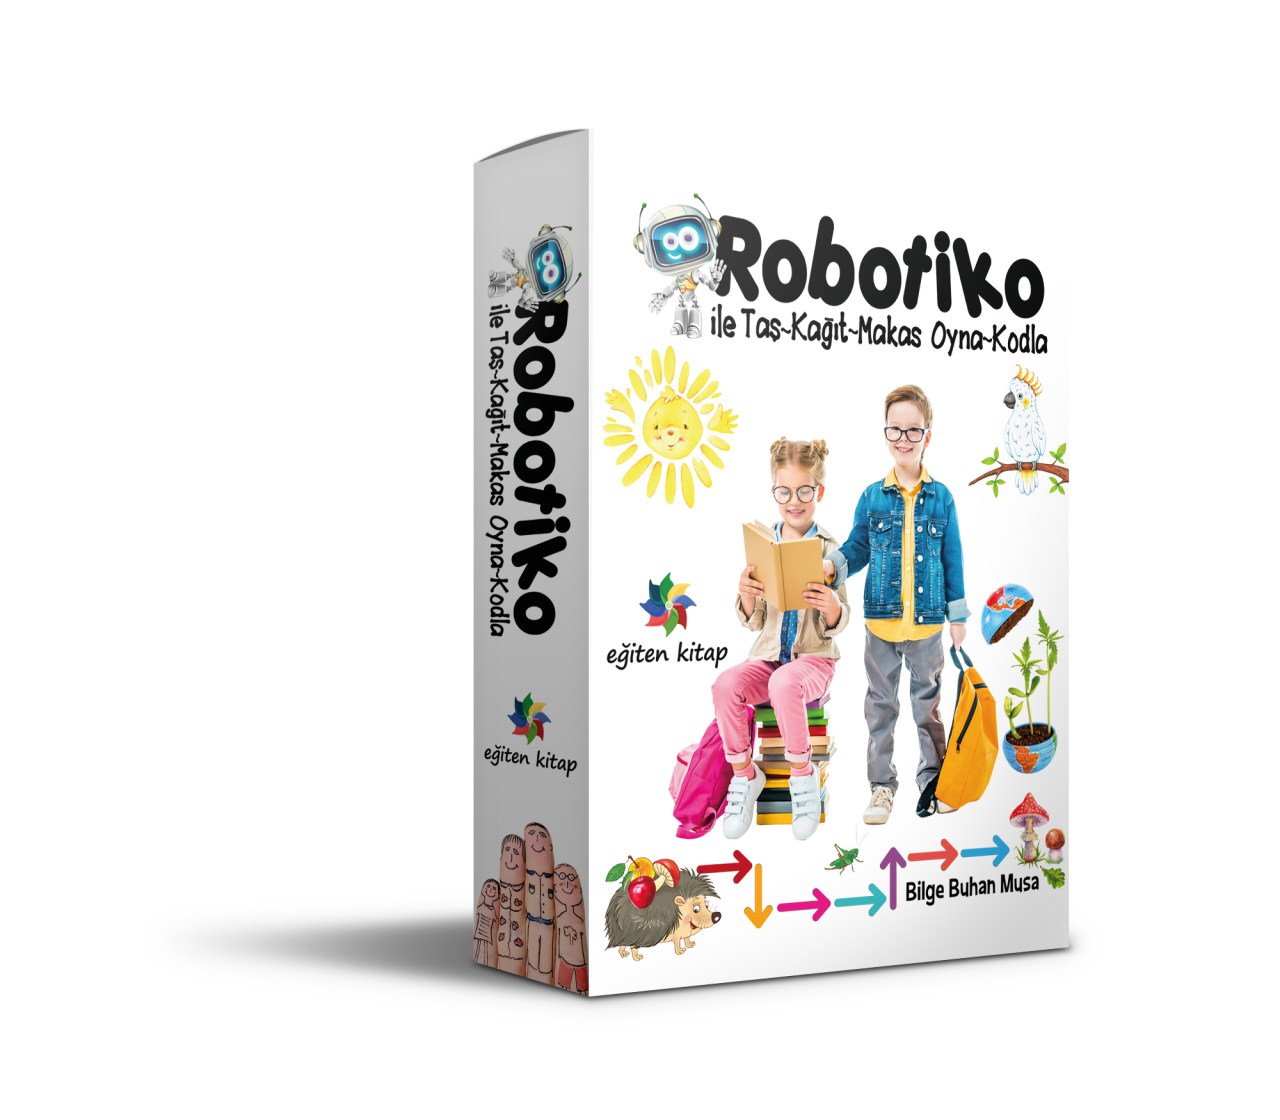 Robotiko ile Taş Kağıt Makas Oyna Kodla